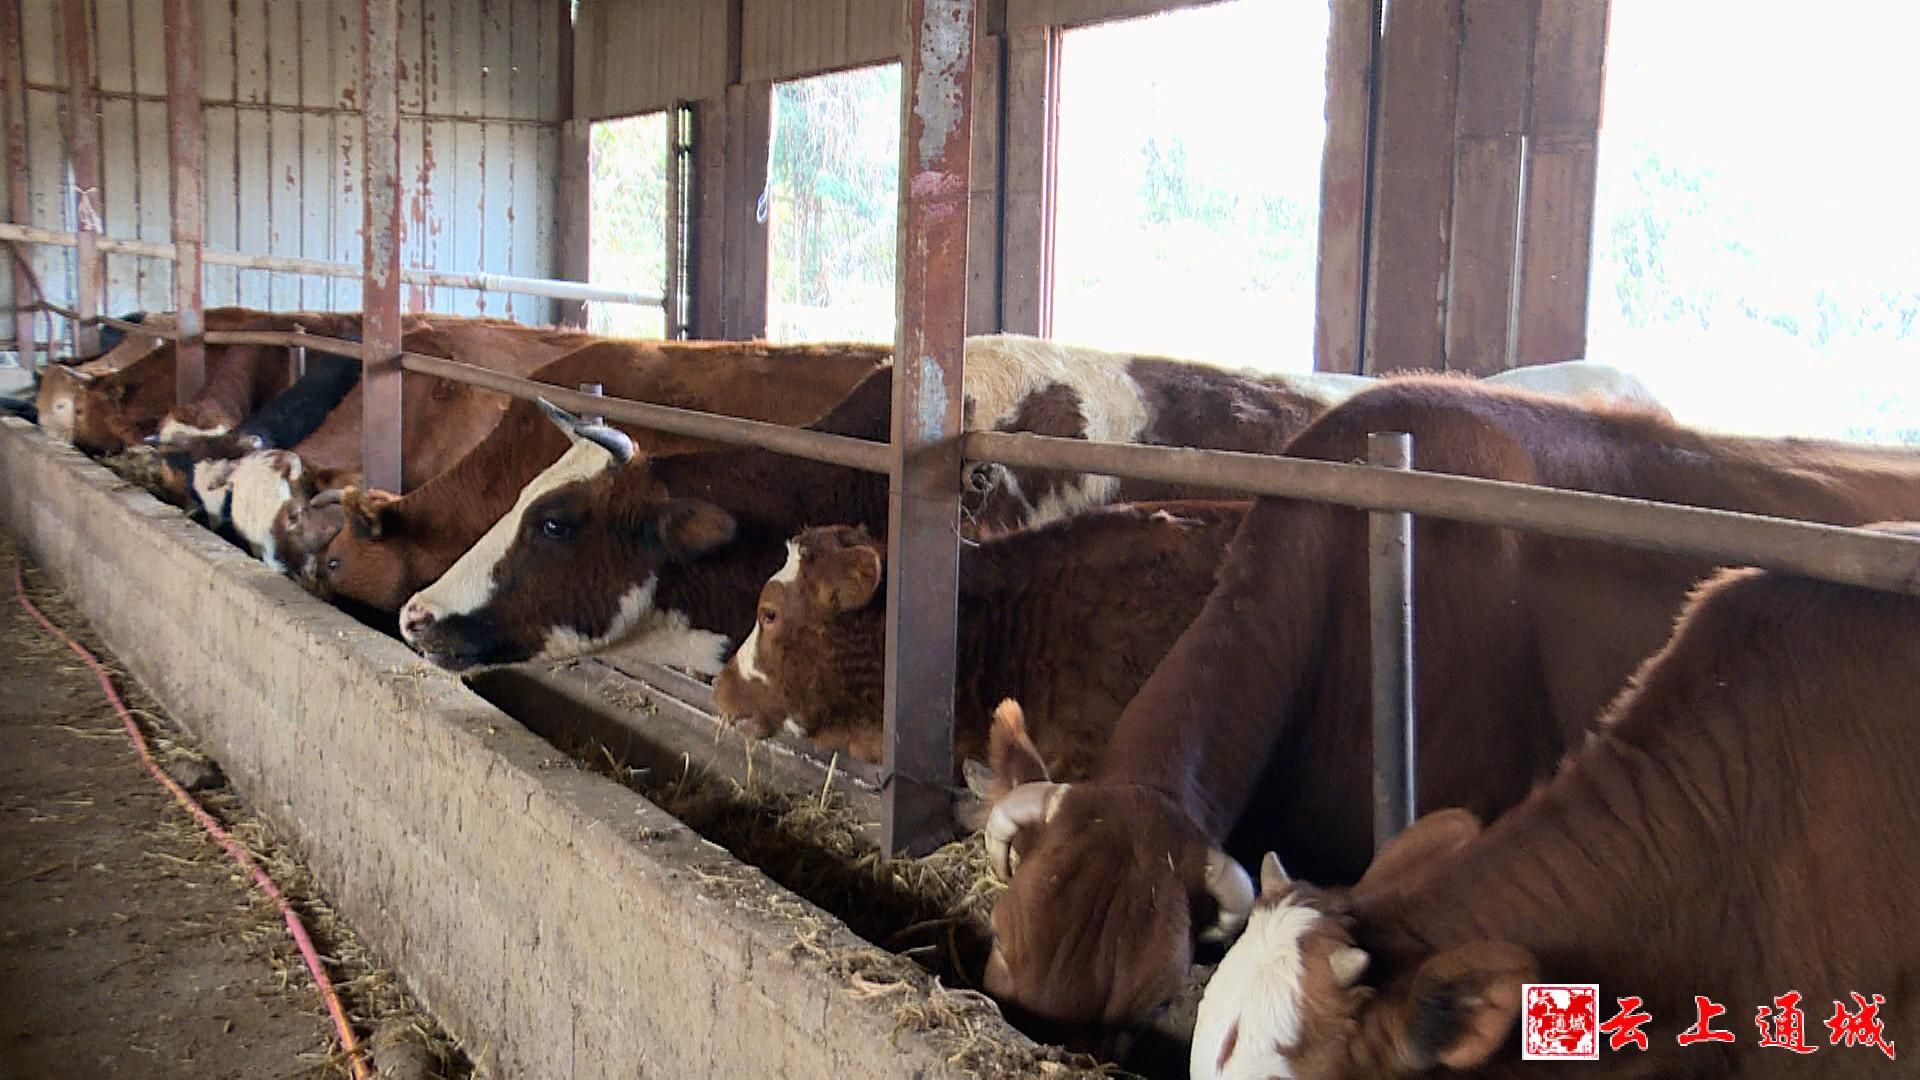 沙堆镇石冲村养殖户 付冠英:我从2012年开始养牛,刚开始是因为我老婆